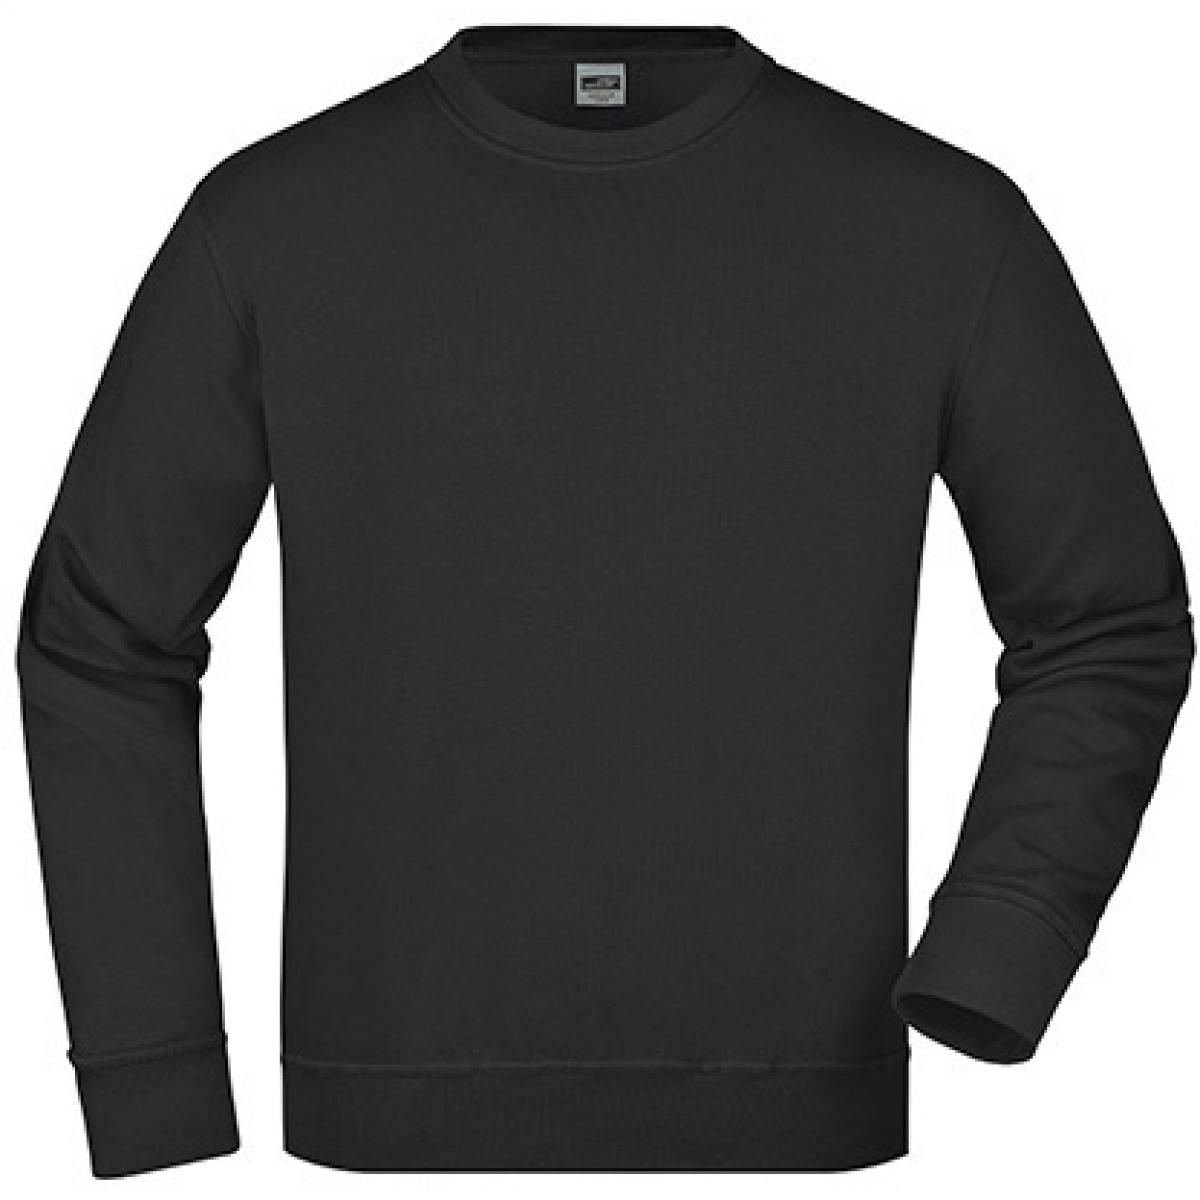 Hersteller: James+Nicholson Herstellernummer: JN840 Artikelbezeichnung: Workwear Sweatshirt / Waschbar bis 60C Farbe: Black